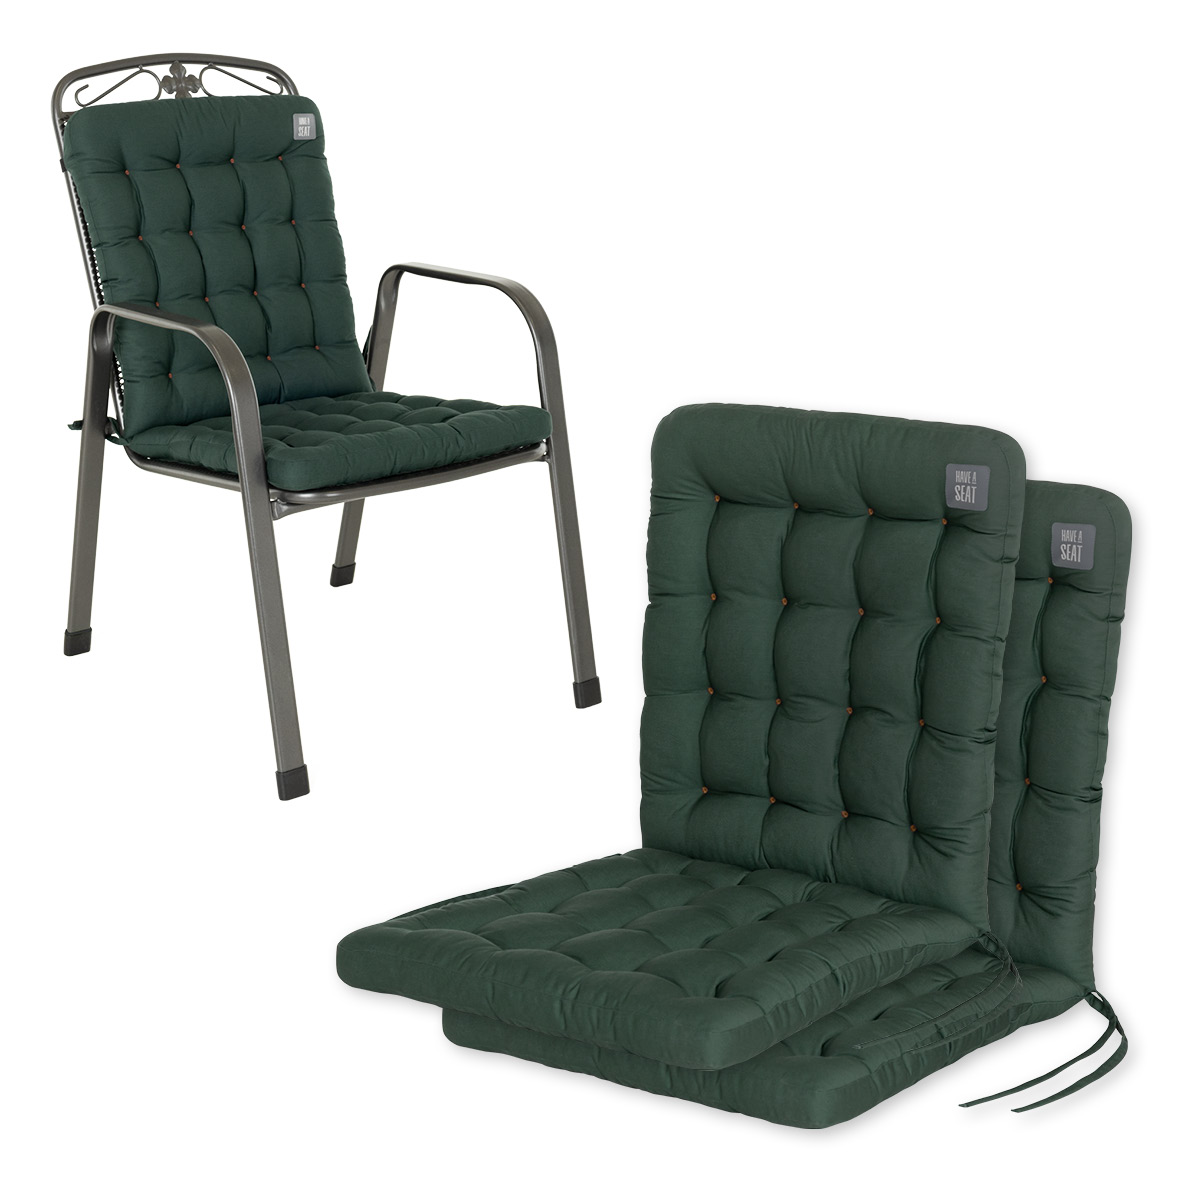 Niedriglehner Auflagen Moosgrün | 1 St. | bequemes Sitzpolster, orthopädisch gepolsterte Stapelstuhl-Sitzauflagen | HAVE A SEAT Living